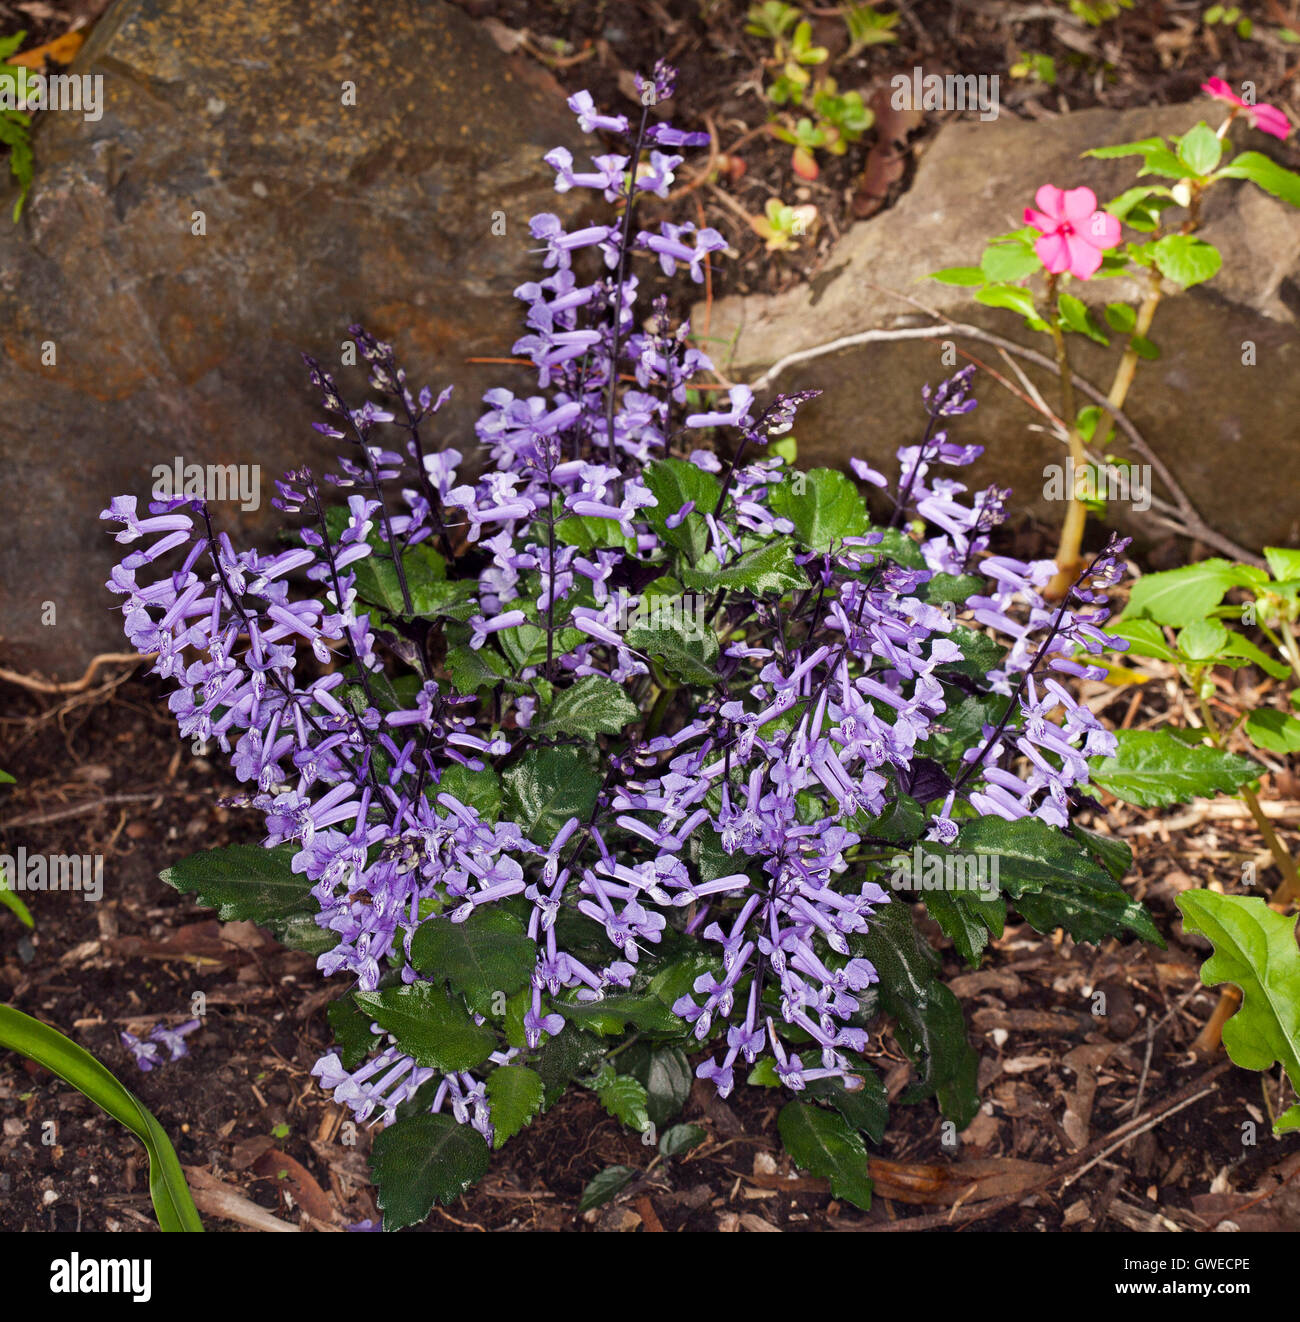 Cluster von Ähren mit leuchtend violetten Blüten & dunkelgrün Blätter Garten, mehrjährige Pflanze Plectranthus Plepalila "Mona Lavendel" Stockfoto